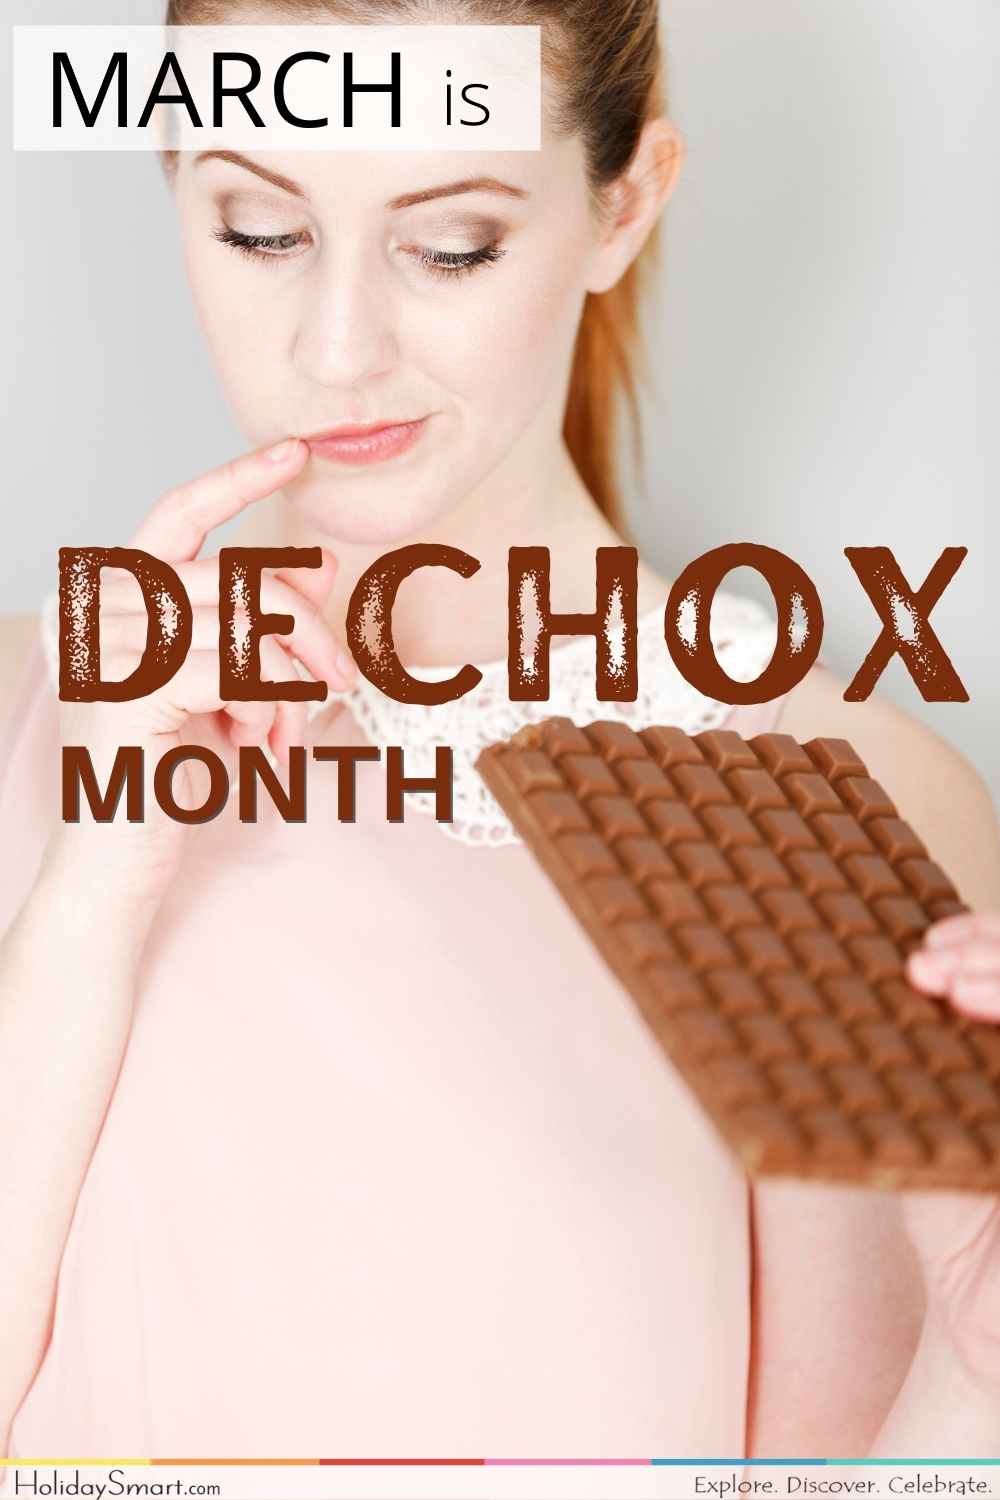 Dechox Month